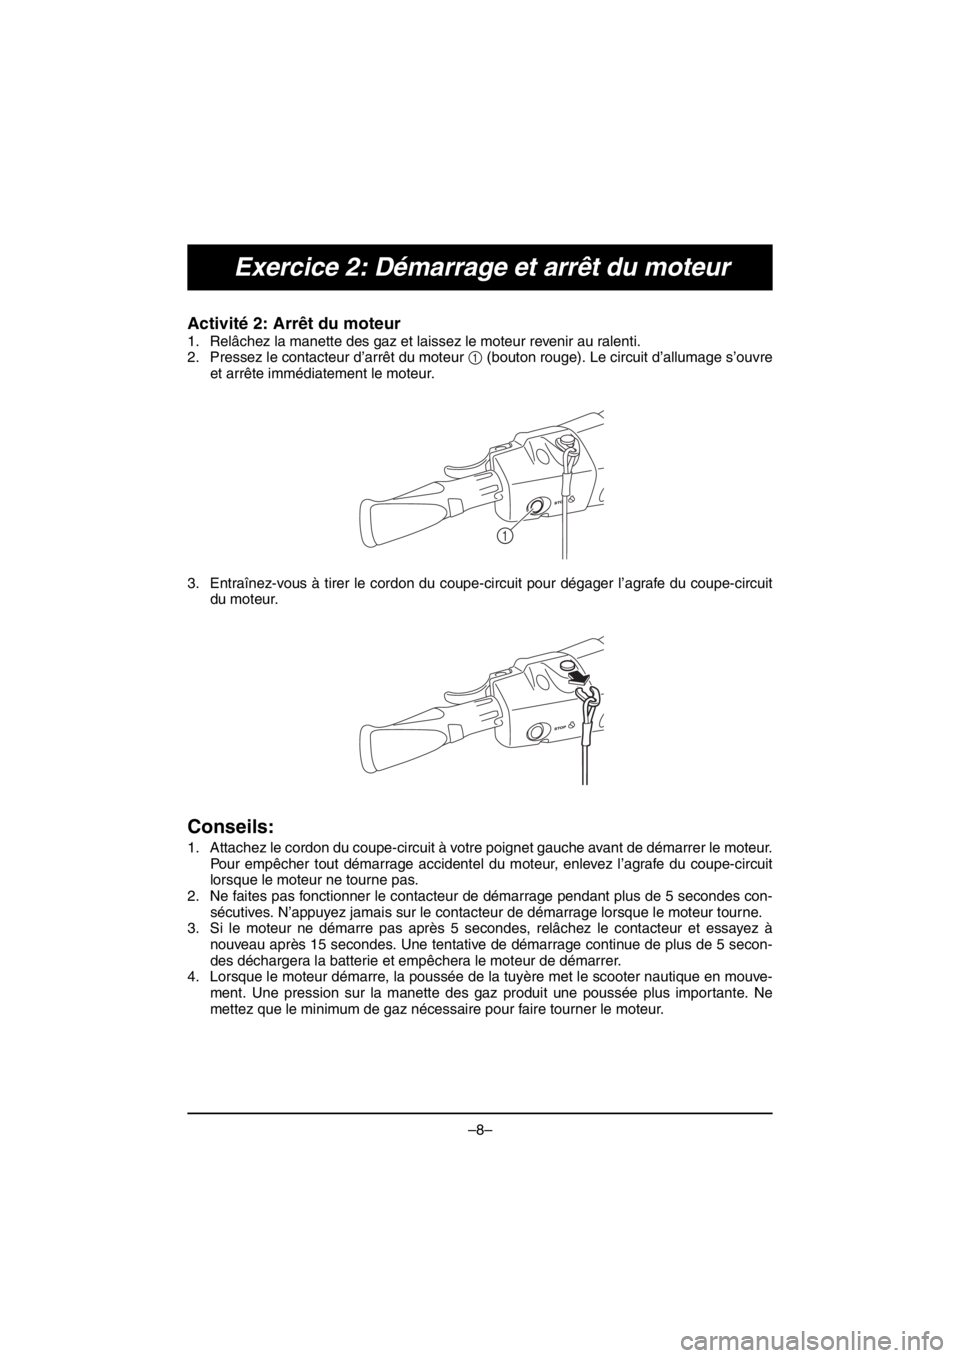 YAMAHA VX DELUXE 2016  Notices Demploi (in French) –8–
Exercice 2: Démarrage et arrêt du moteur
Activité 2: Arrêt du moteur 
1. Relâchez la manette des gaz et laissez le moteur revenir au ralenti. 
2. Pressez le contacteur d’arrêt du moteu